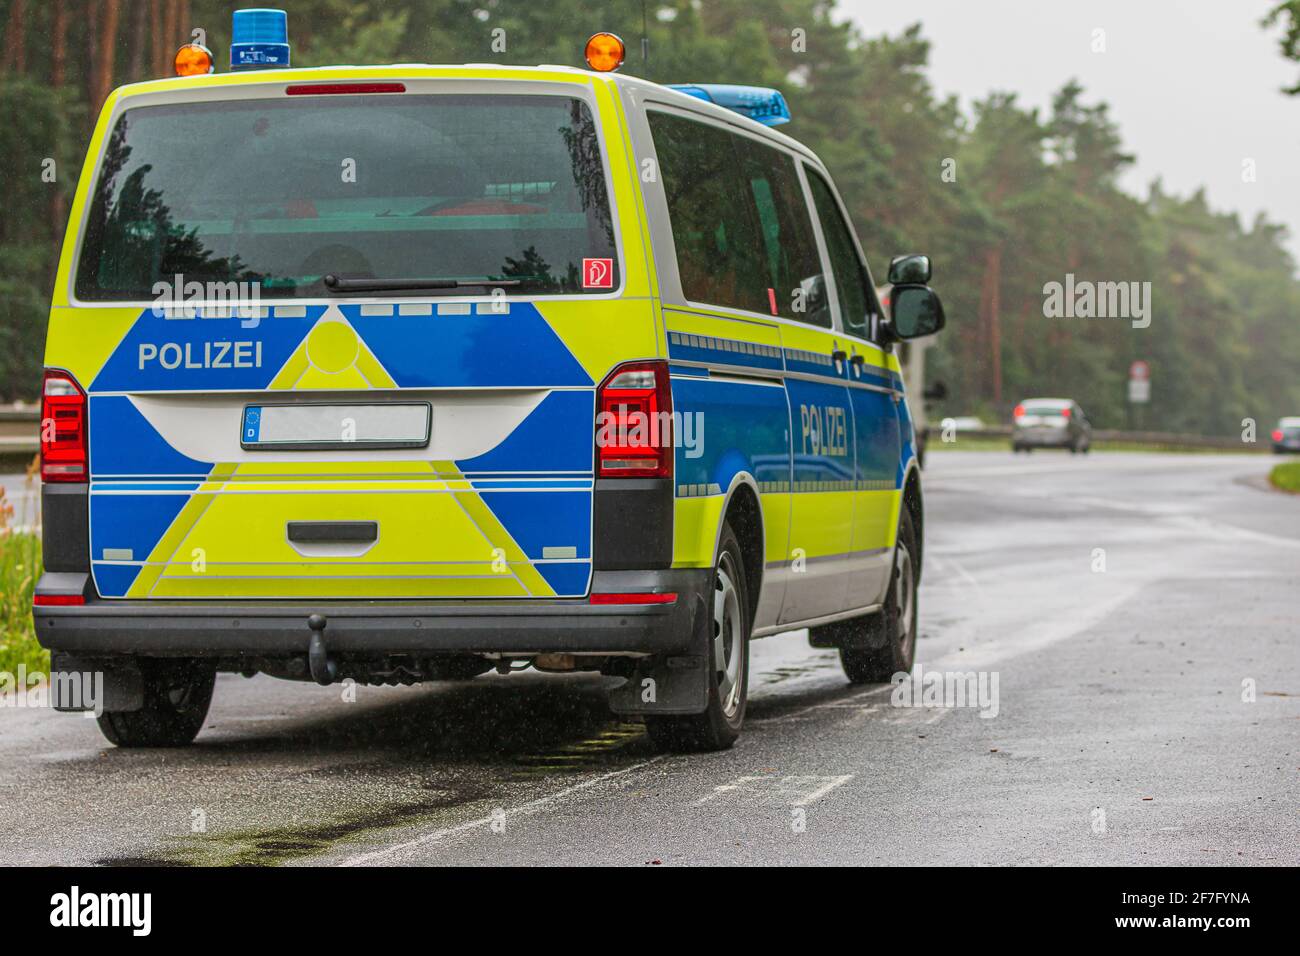 Polizeiauto in einem Notstopp neben der Autobahn aus dem Land Brandenburg.  Polizeifahrzeug in blau-gelber Lackierung mit reflektierenden Streifen  Stockfotografie - Alamy